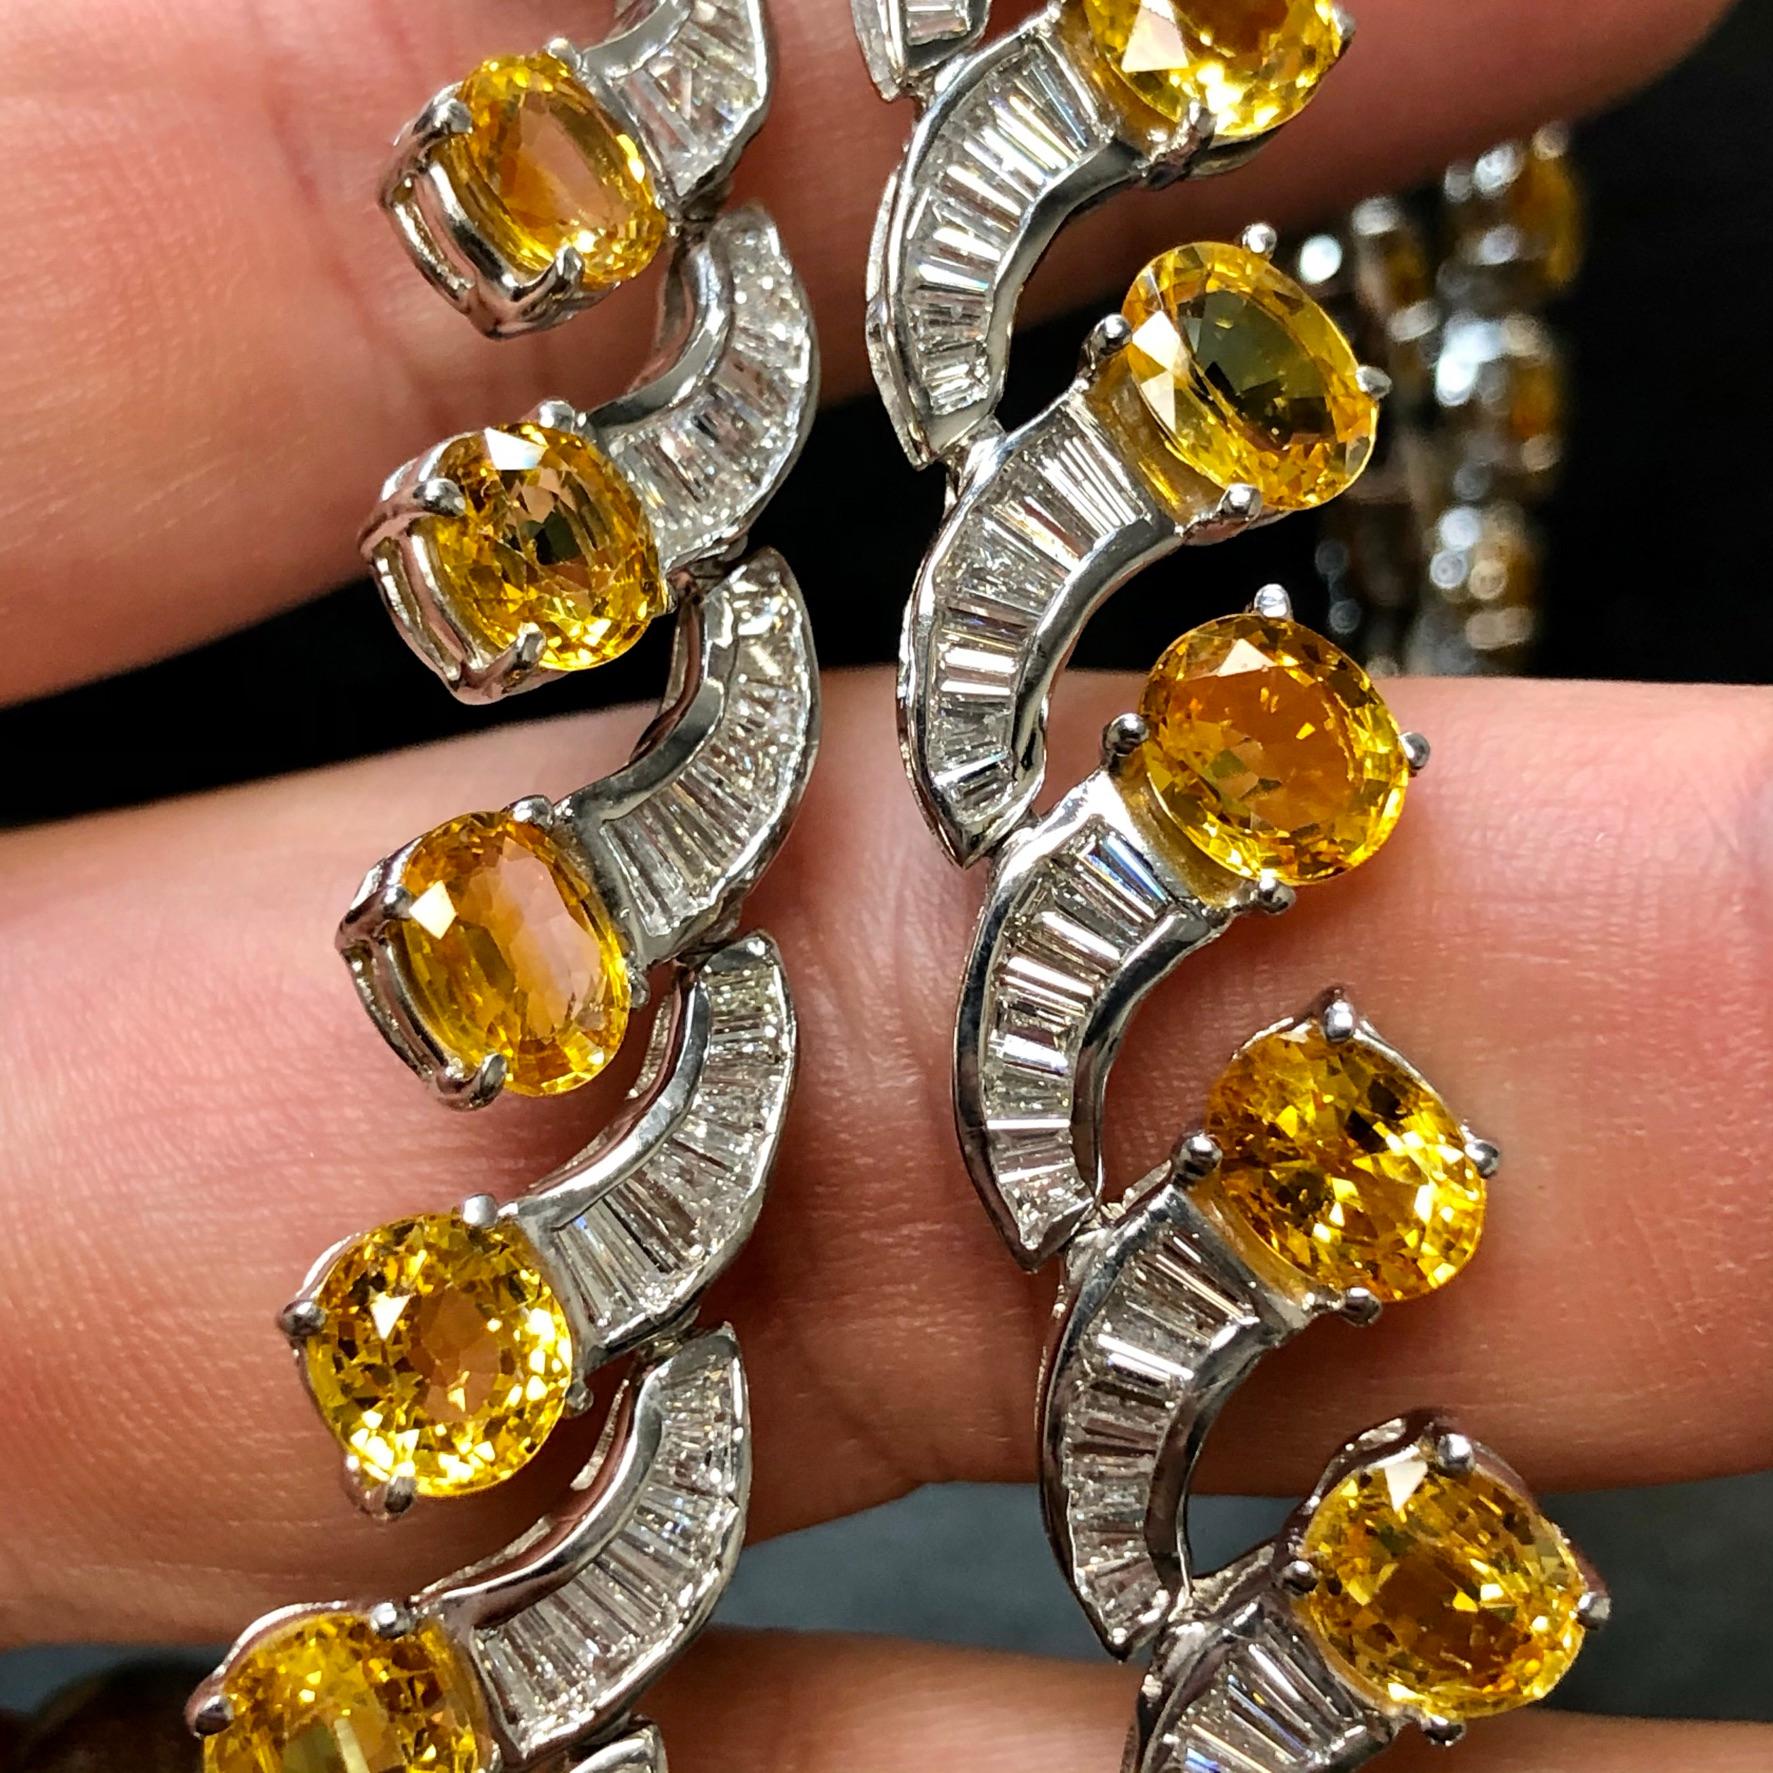 Diese Halskette ist ein echter Hingucker! Die Halskette aus 18 Karat Weißgold ist mit Baguette-Diamanten von ca. 11cttw in der Farbe G-I und der Reinheit Vs2-Si1 sowie mit gelben Saphiren von ca. 40cttw besetzt.

Abmessungen/Gewicht
Maße: 17